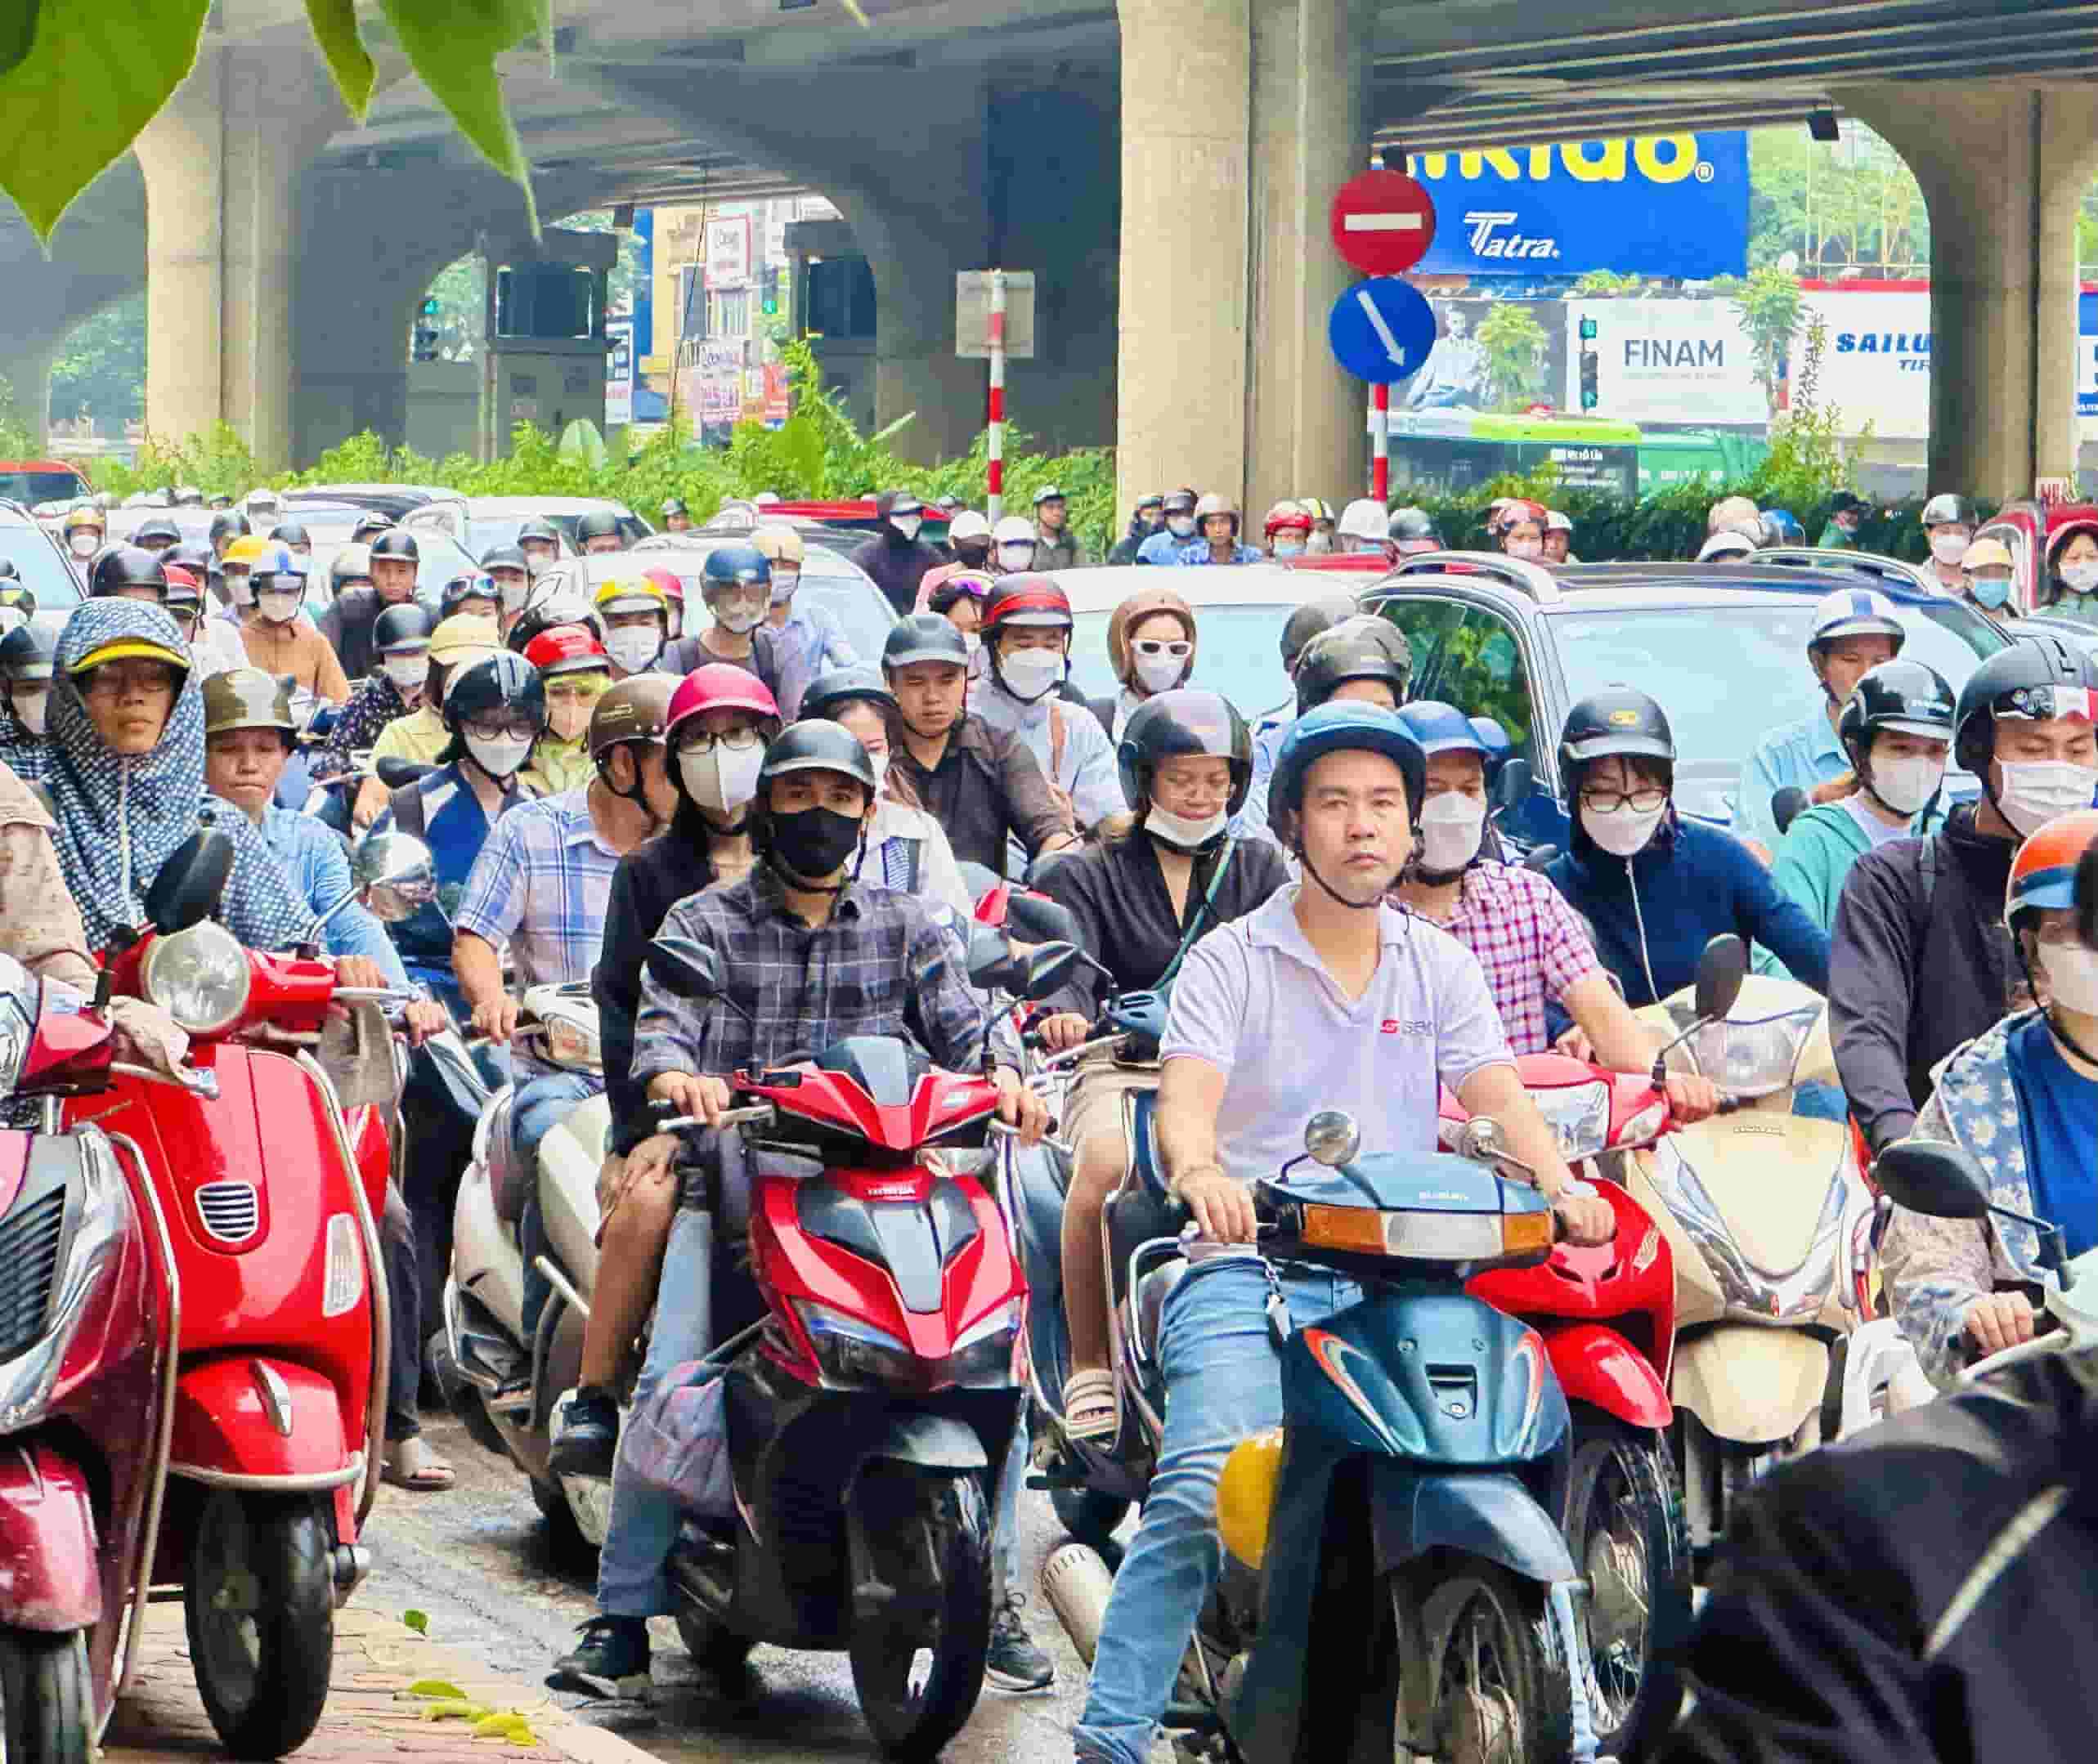 Ghi nhận của PV Báo Lao Động tại đường Khuất Duy Tiến (quận Thanh Xuân, Hà Nội), từ 7h30 phút đoạn đường này xảy ra cảnh ùn tắc nghiêm trọng.